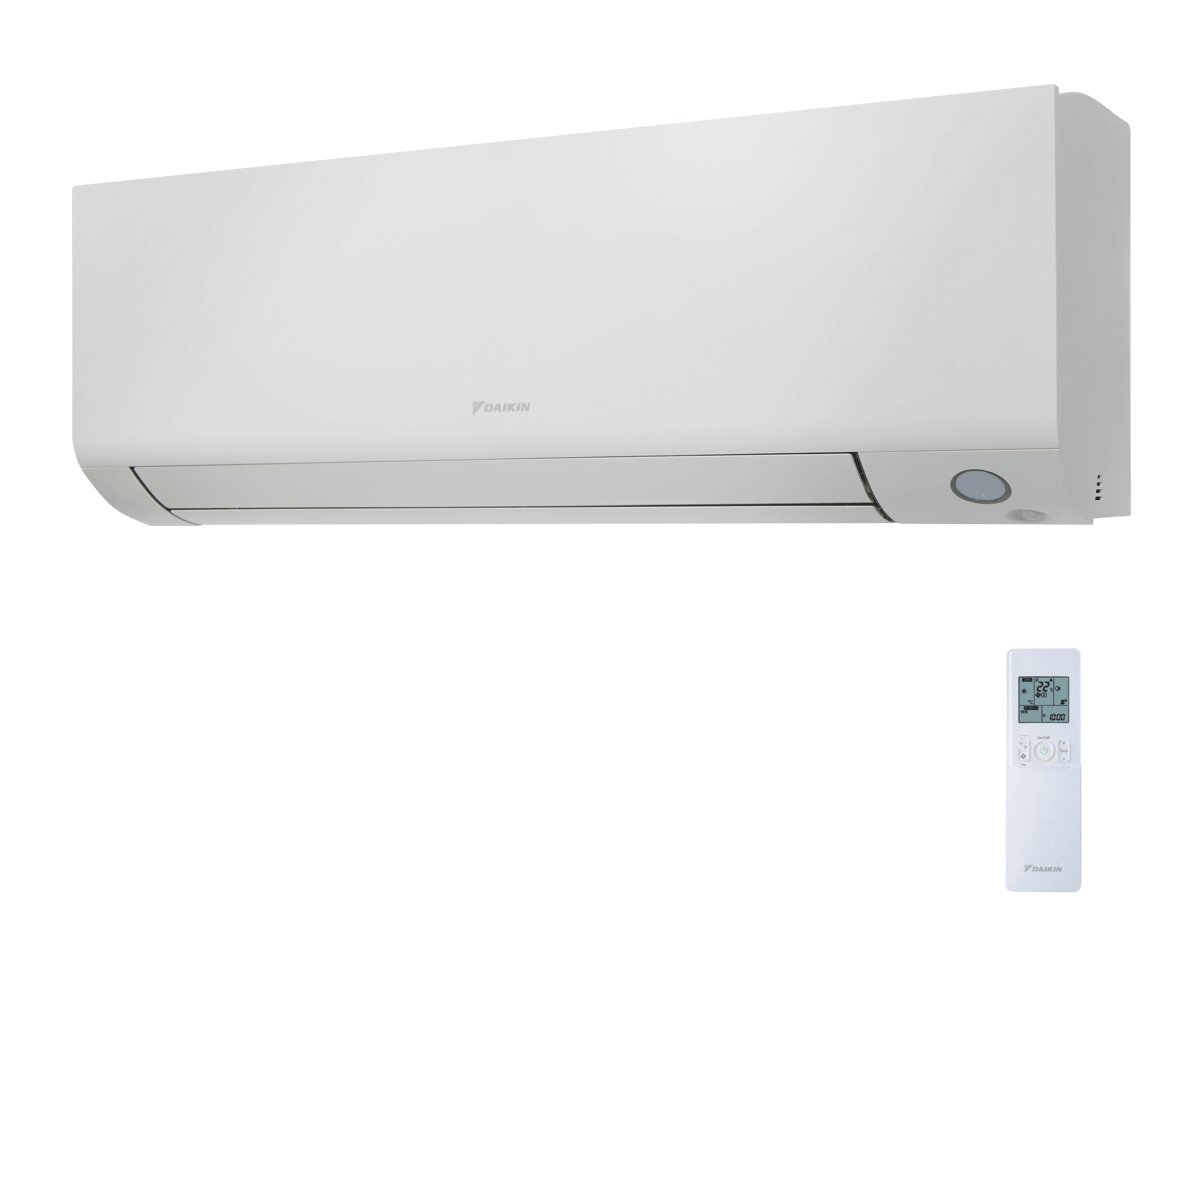 Système de climatisation et d'eau chaude sanitaire double split Daikin Multi+ - Unités intérieures Perfera All Seasons 12000+12000 BTU - Réservoir 90 l